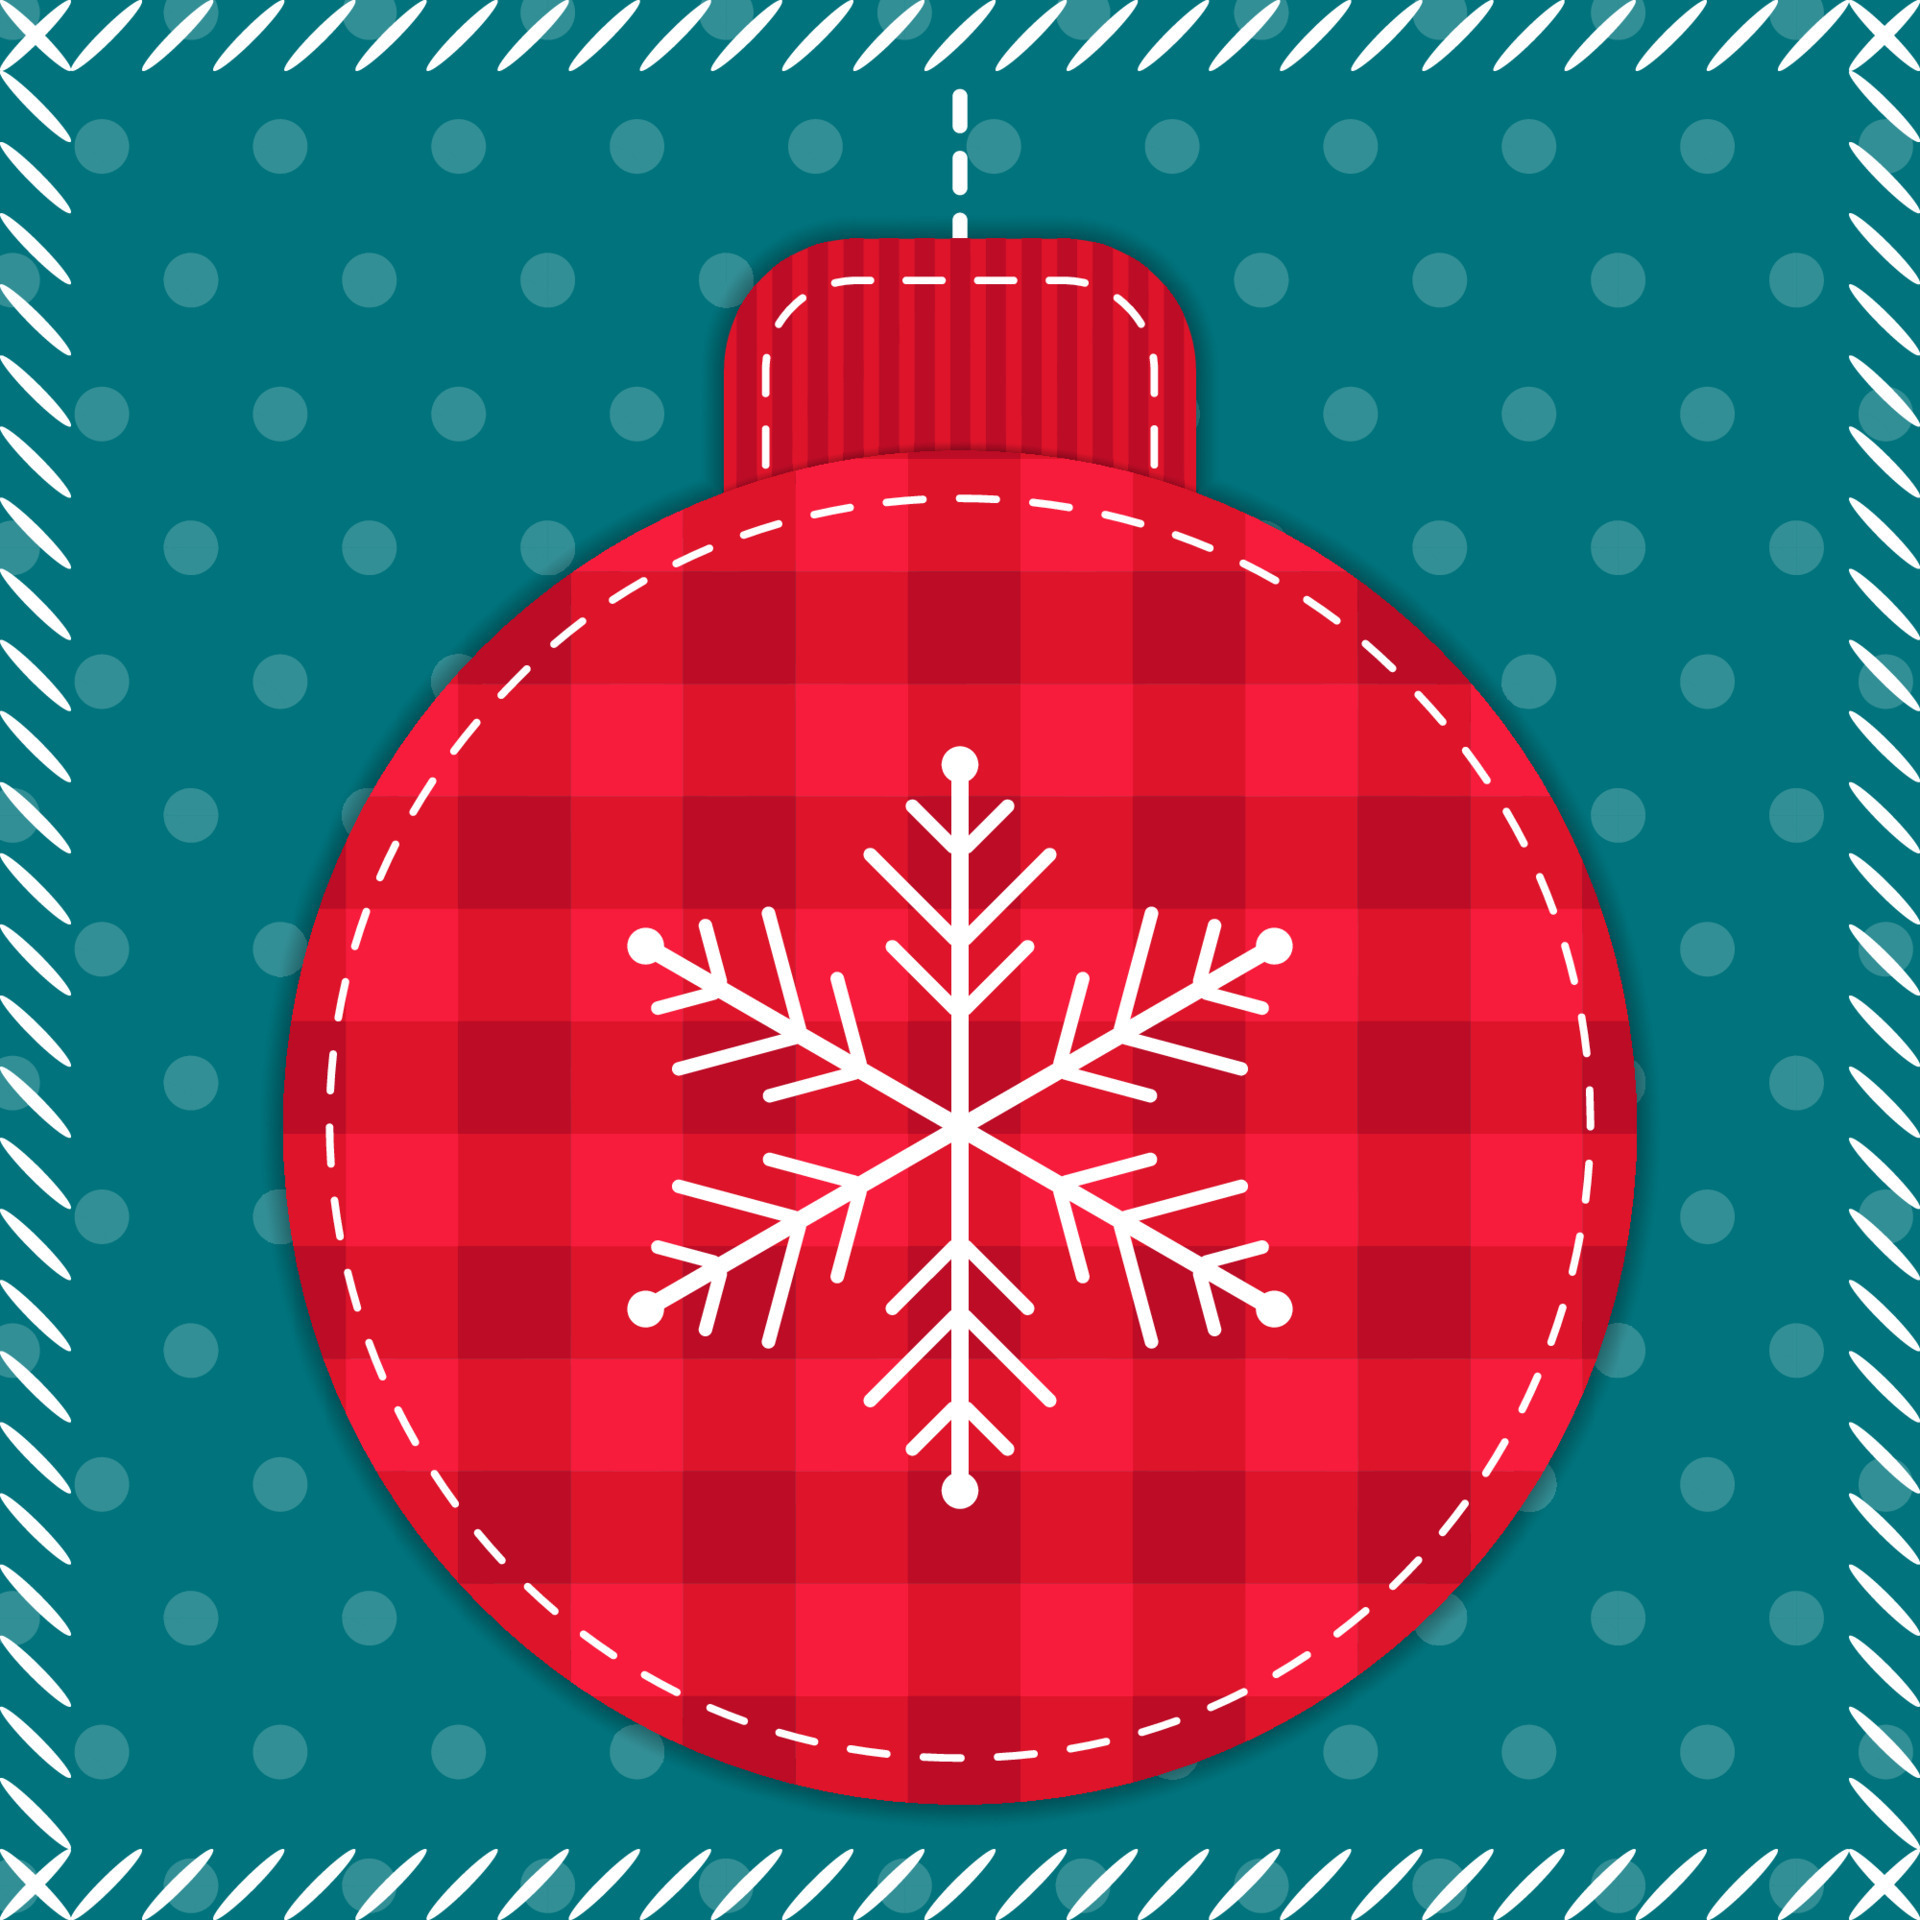 ilustração de retalhos de natal vermelho e azul com bola de árvore de natal  e floco de neve. design de colcha de elementos costurados em estilo retro  para crianças têxteis, fundo de tecido, embalagens de presente. 14067842  Vetor no Vecteezy